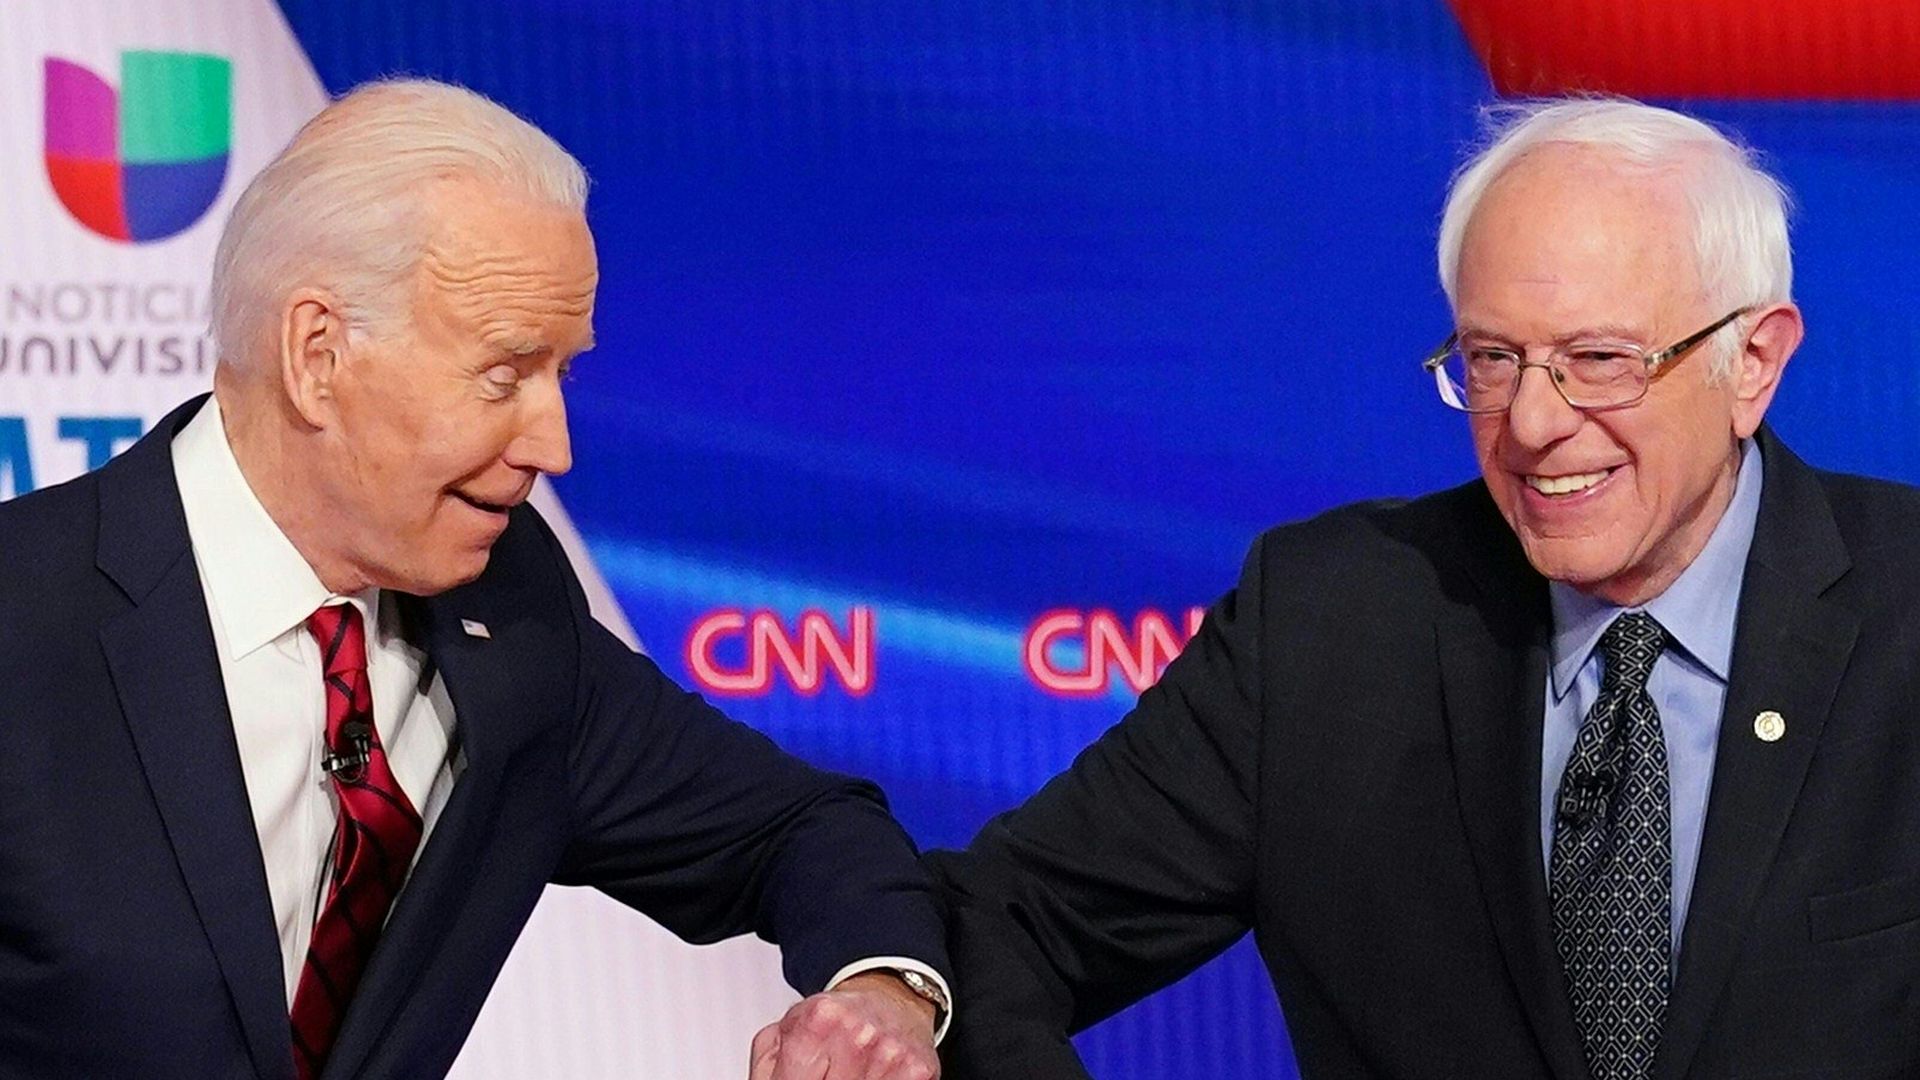 Biden and Sanders